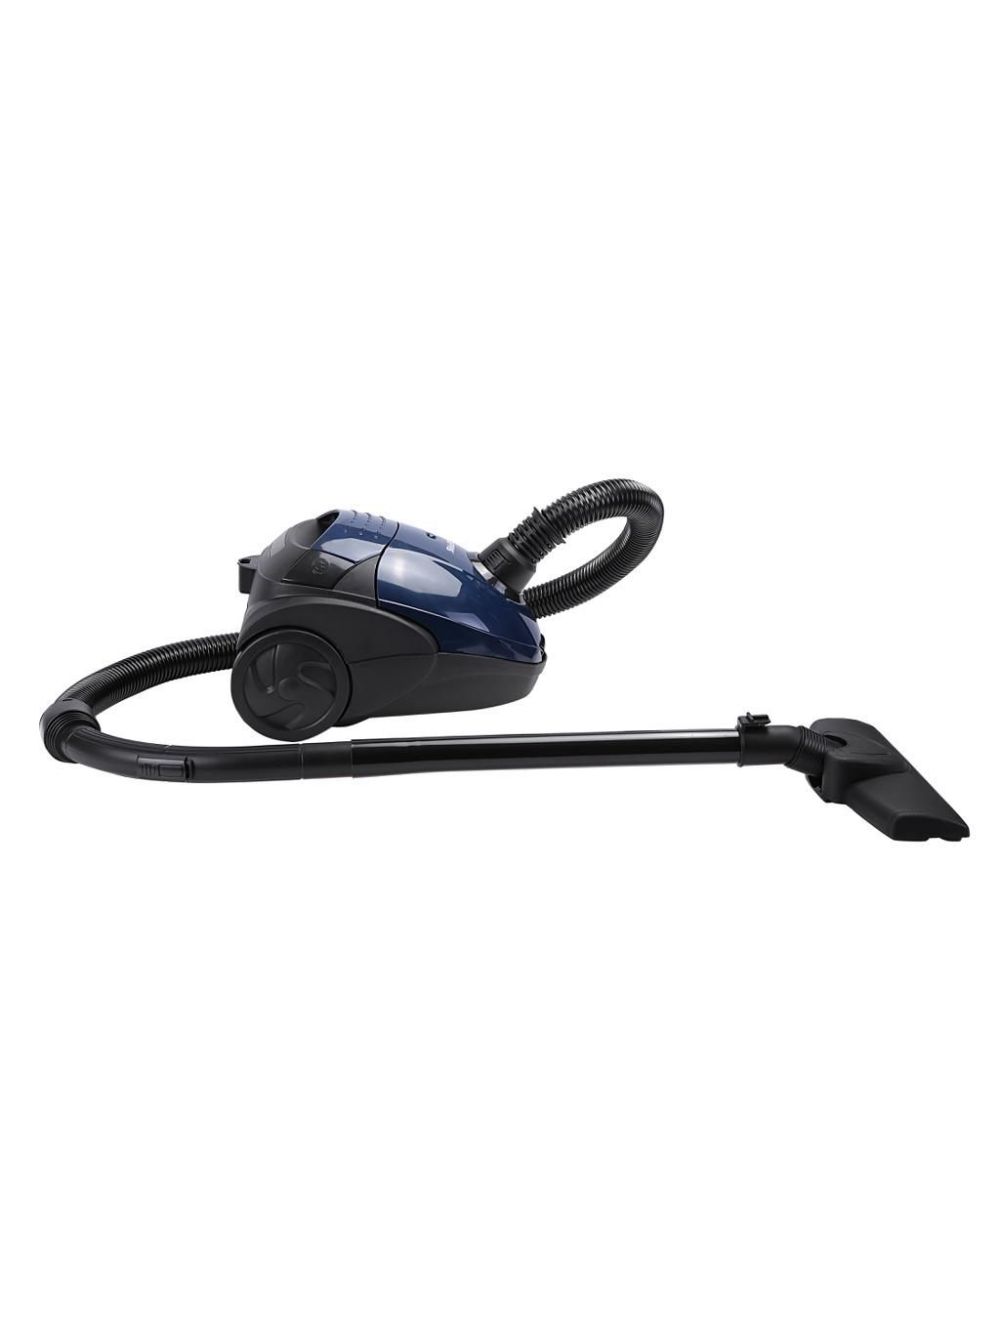 Geepas Vacuum Cleaner GVC2595 Blue